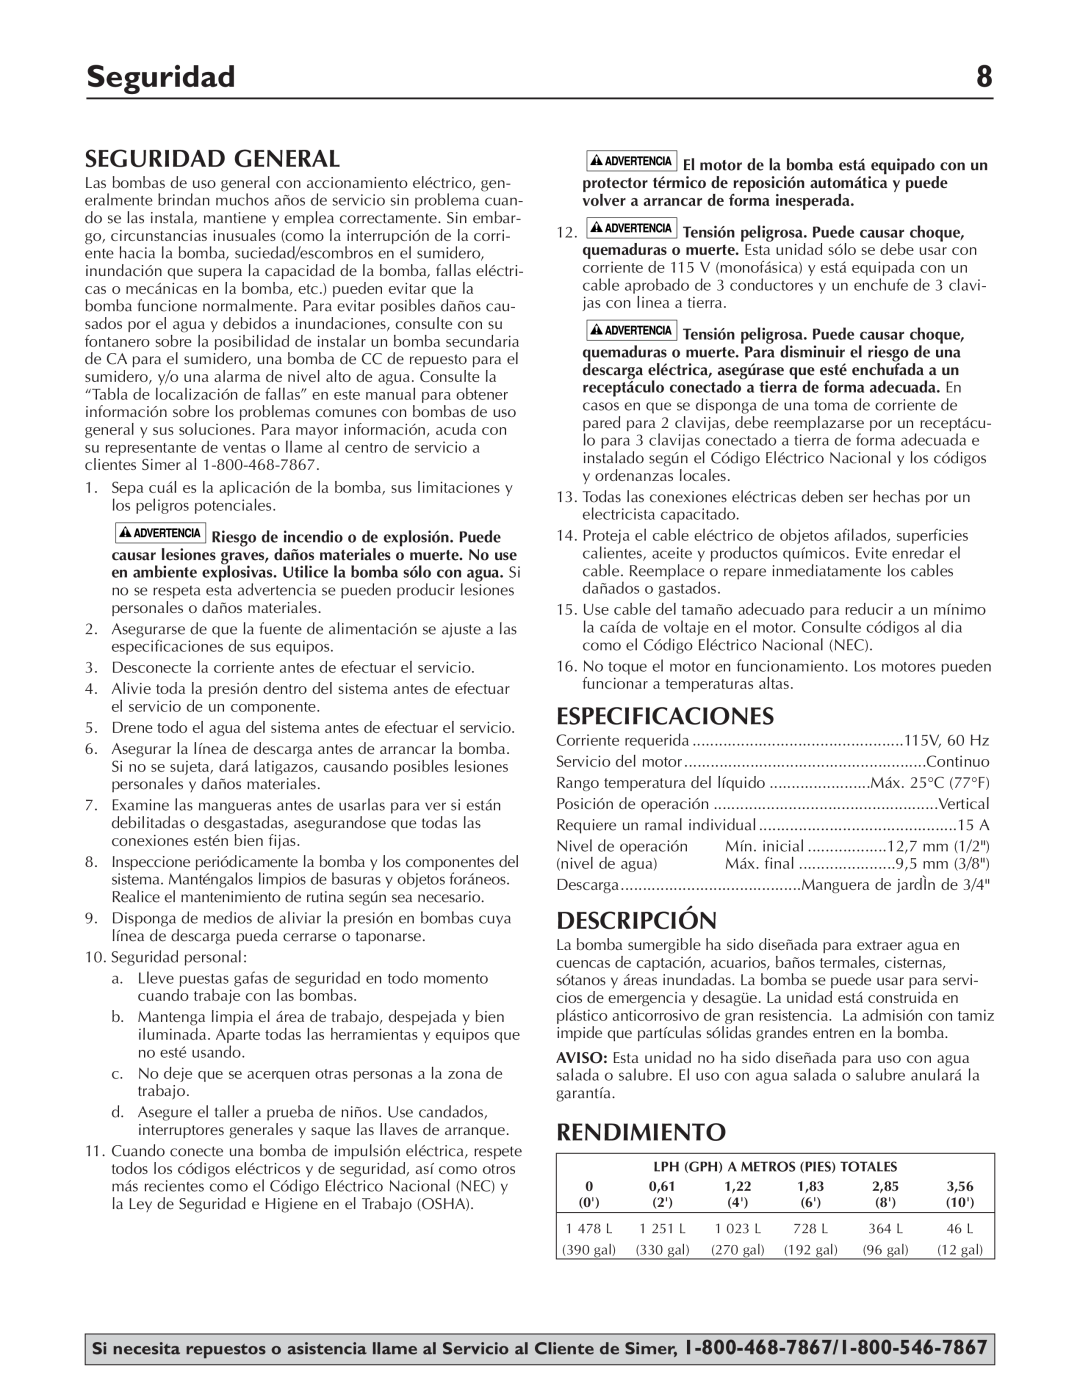 Simer Pumps 2110 owner manual Seguridad General, Especificaciones, Descripción, Rendimiento 